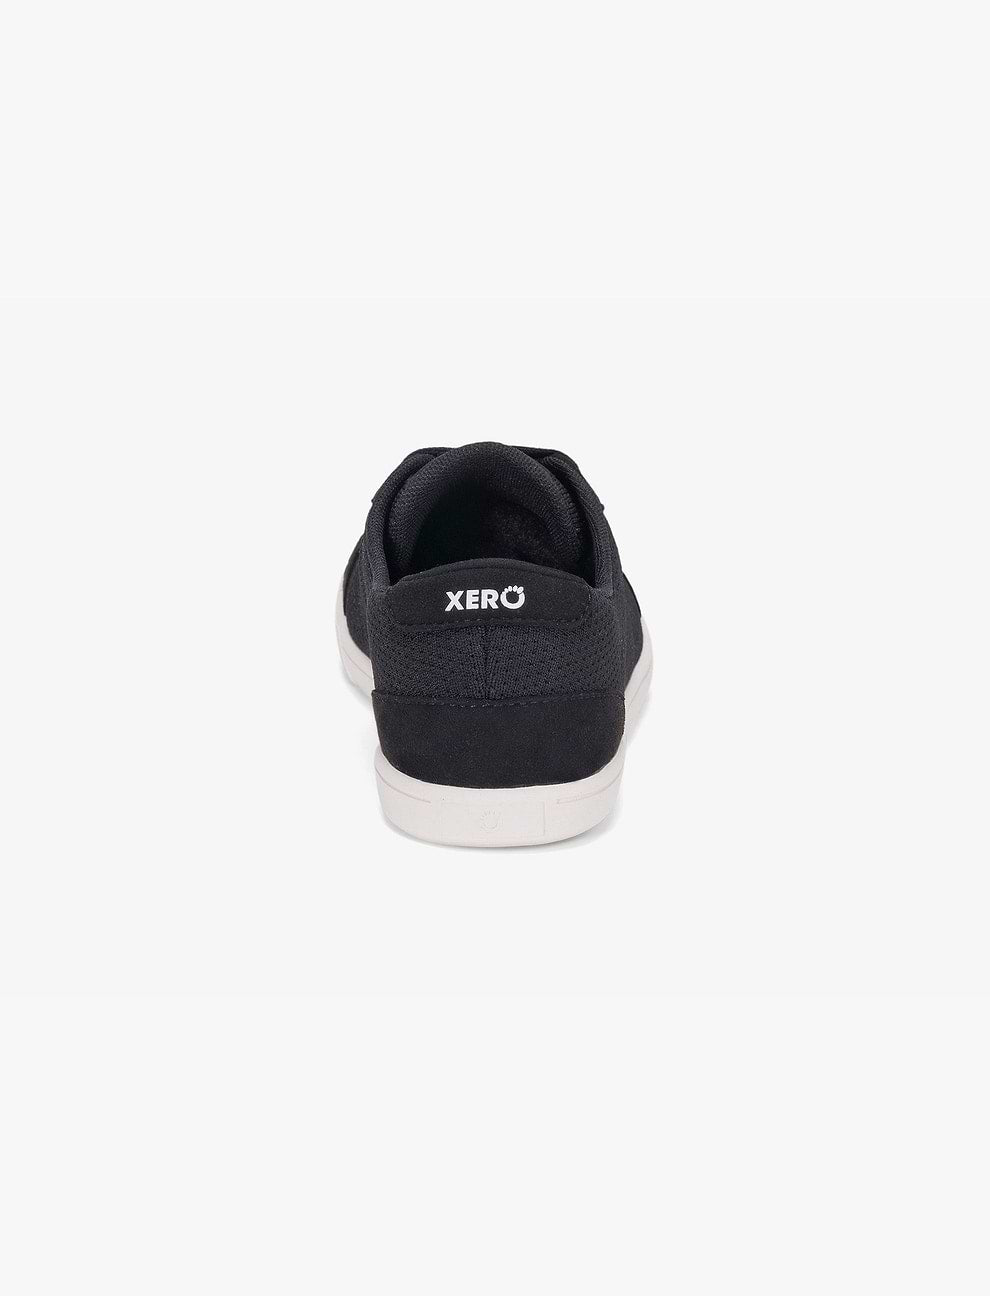 Xero Dillon Women - נעלי סניקרס לנשים זירו דילון-Xero-35.5-נאקו